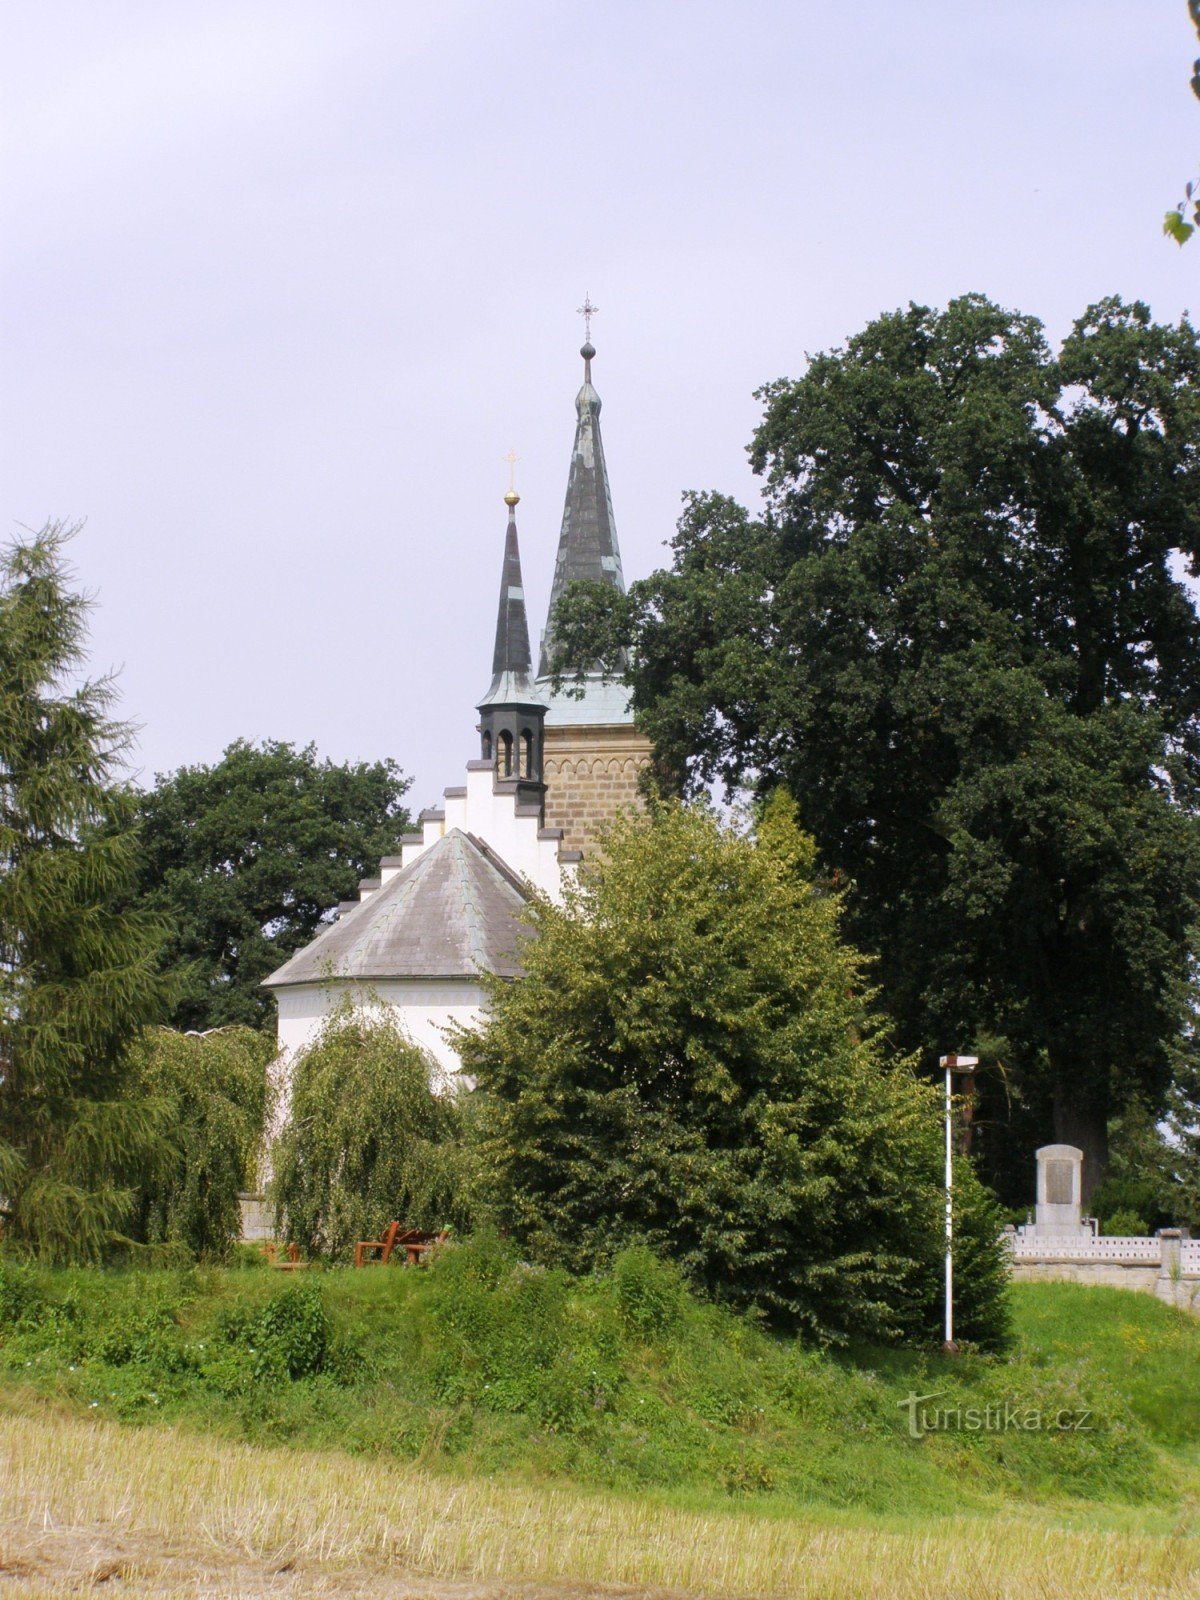 Karlovice - Igreja de S. Jorge